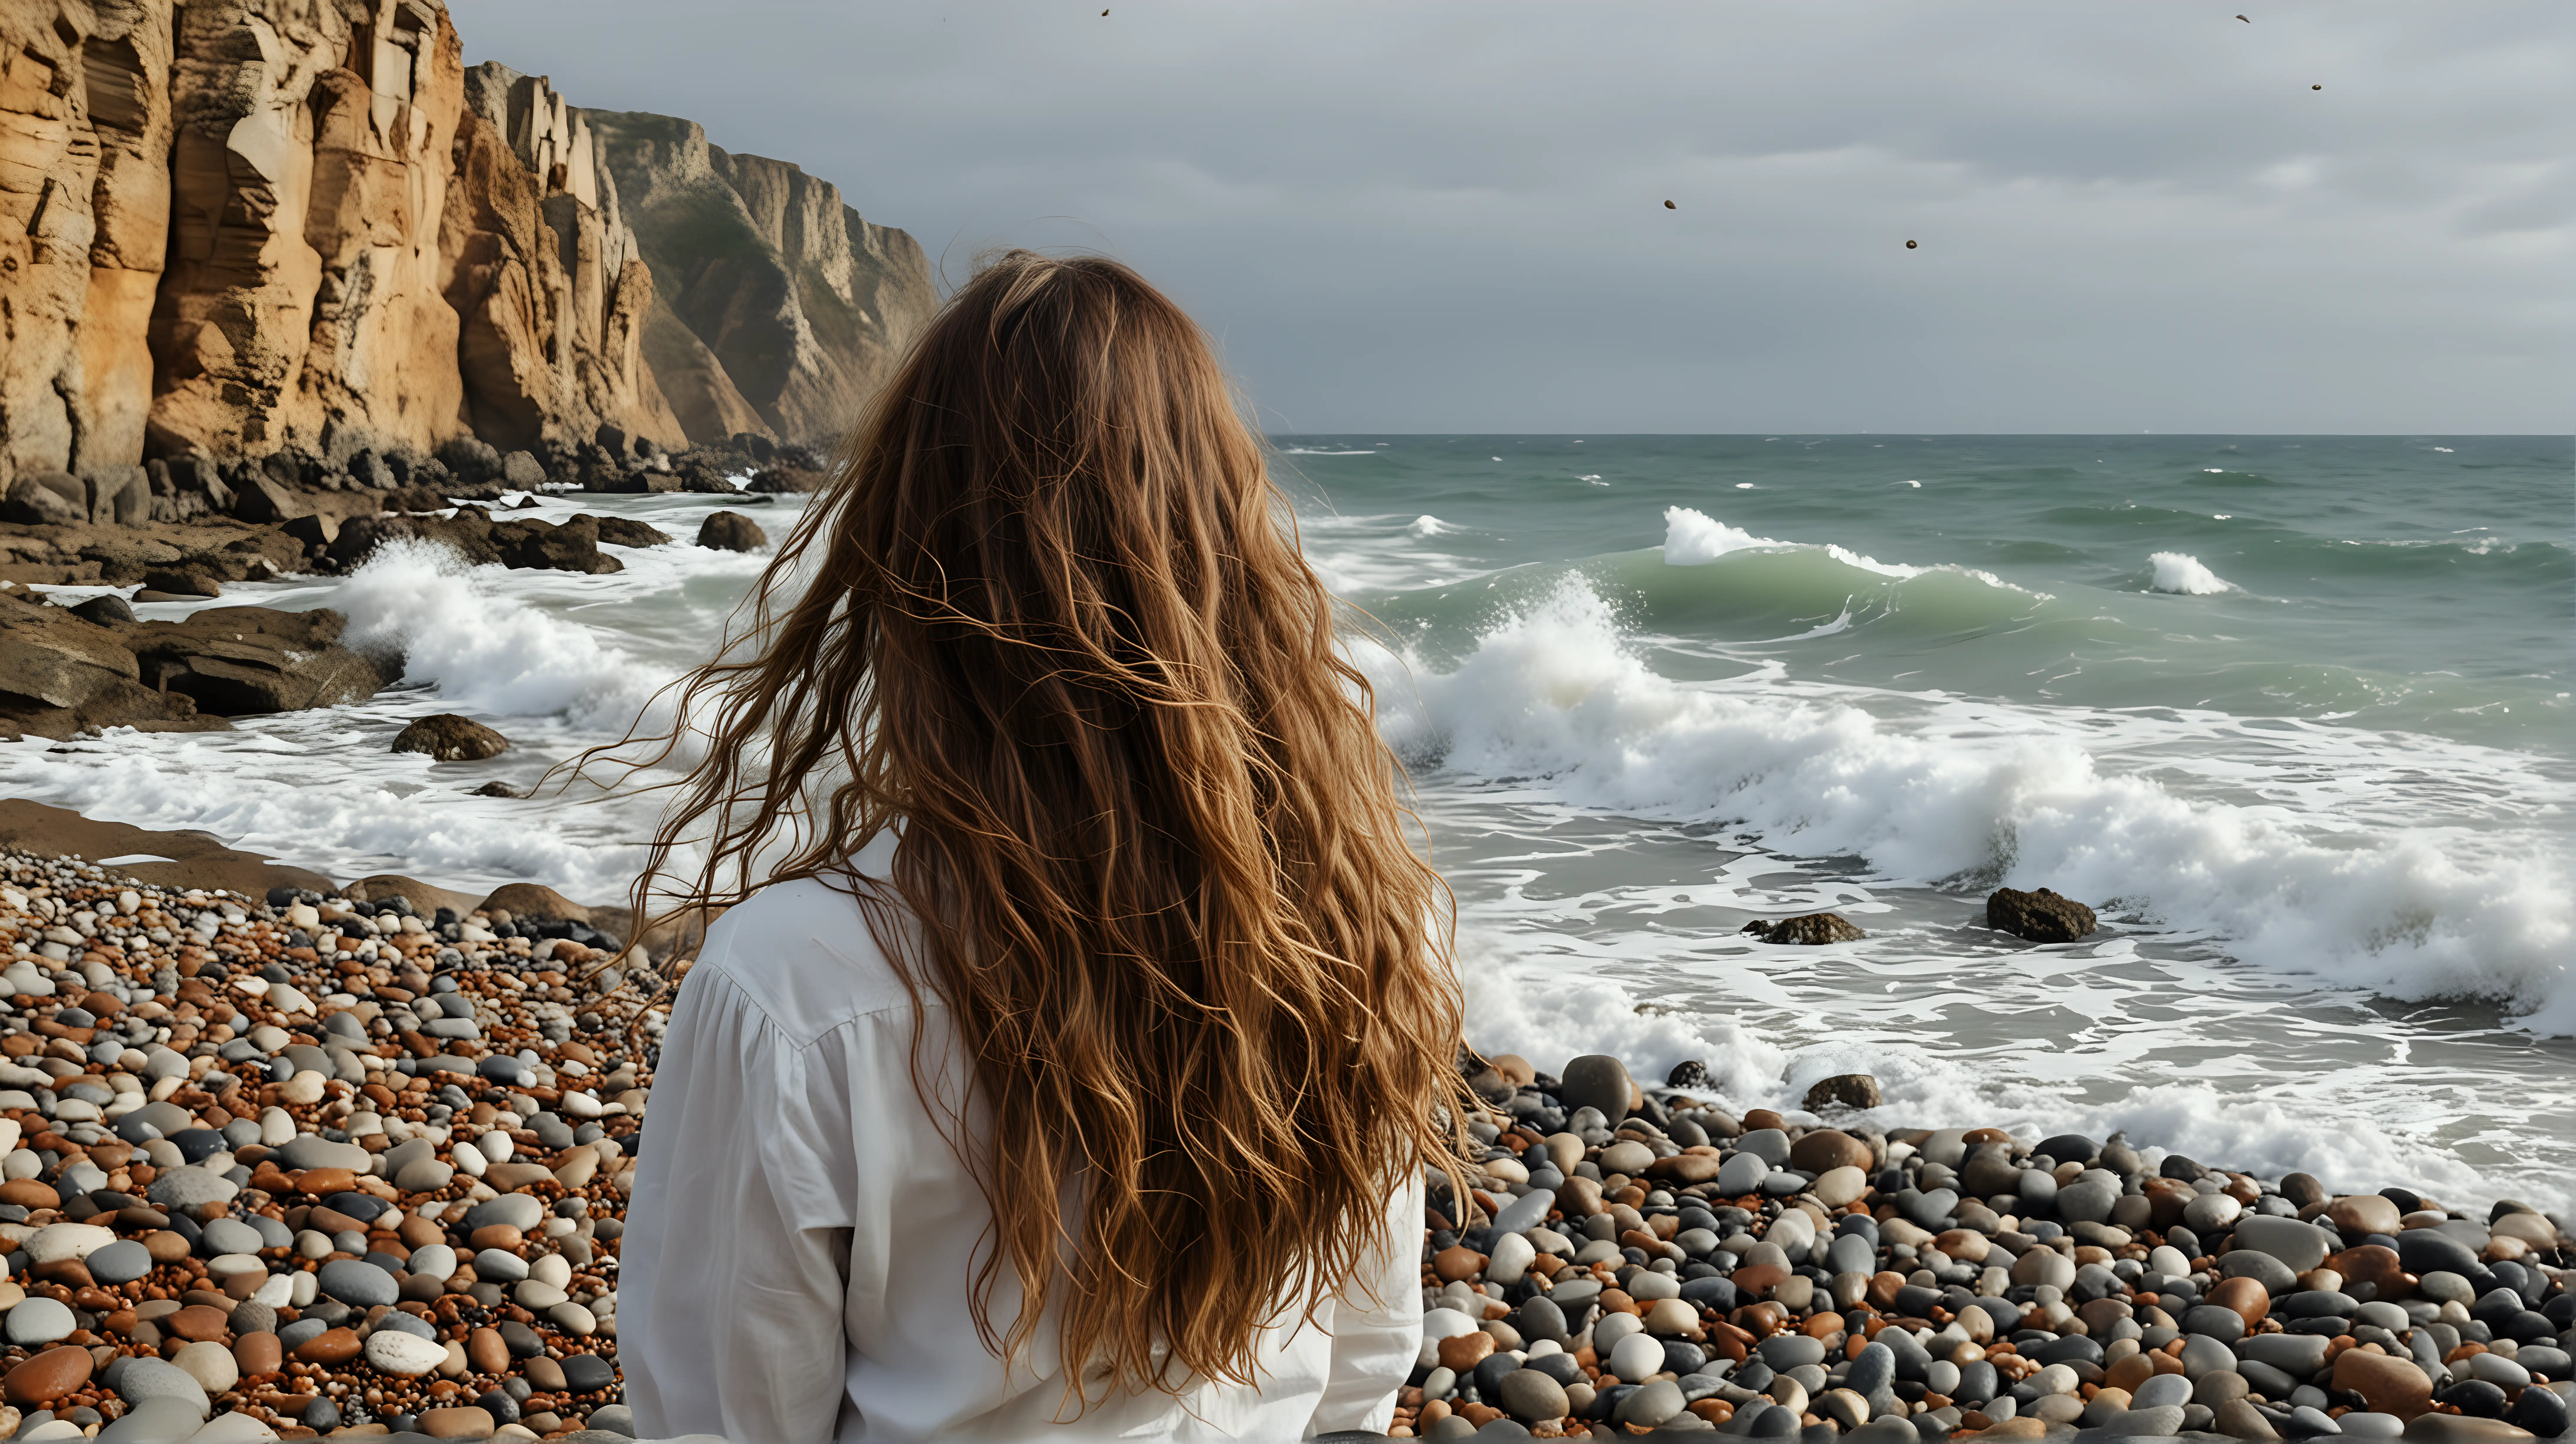 donna con capelli lunghi su una spiaggia con sassi e onde alte che si infrangono. La donna guarda il mare, il ritratto della donna è intero e lontano da un lato e lo sfondo ci sono scogli